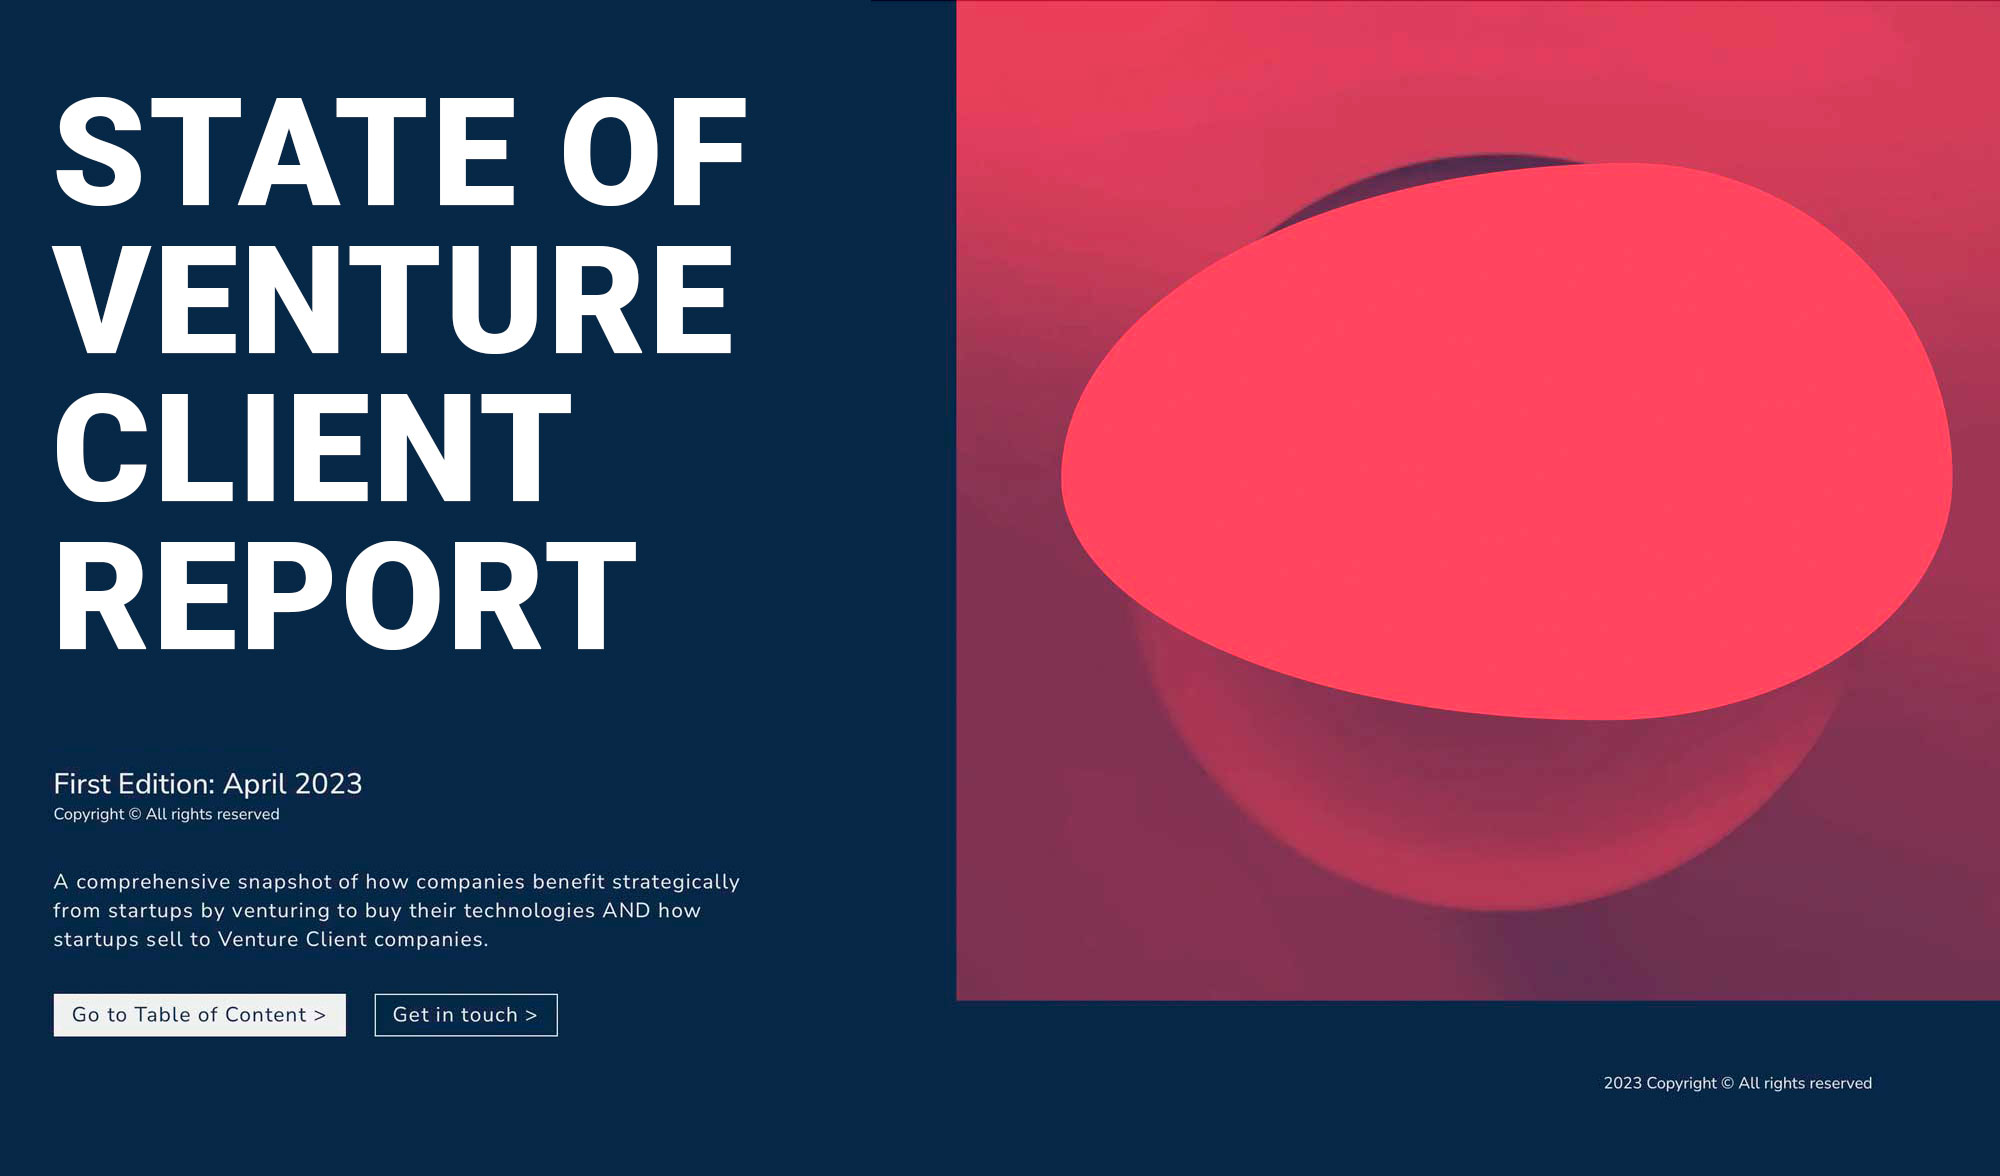 Venture Client report